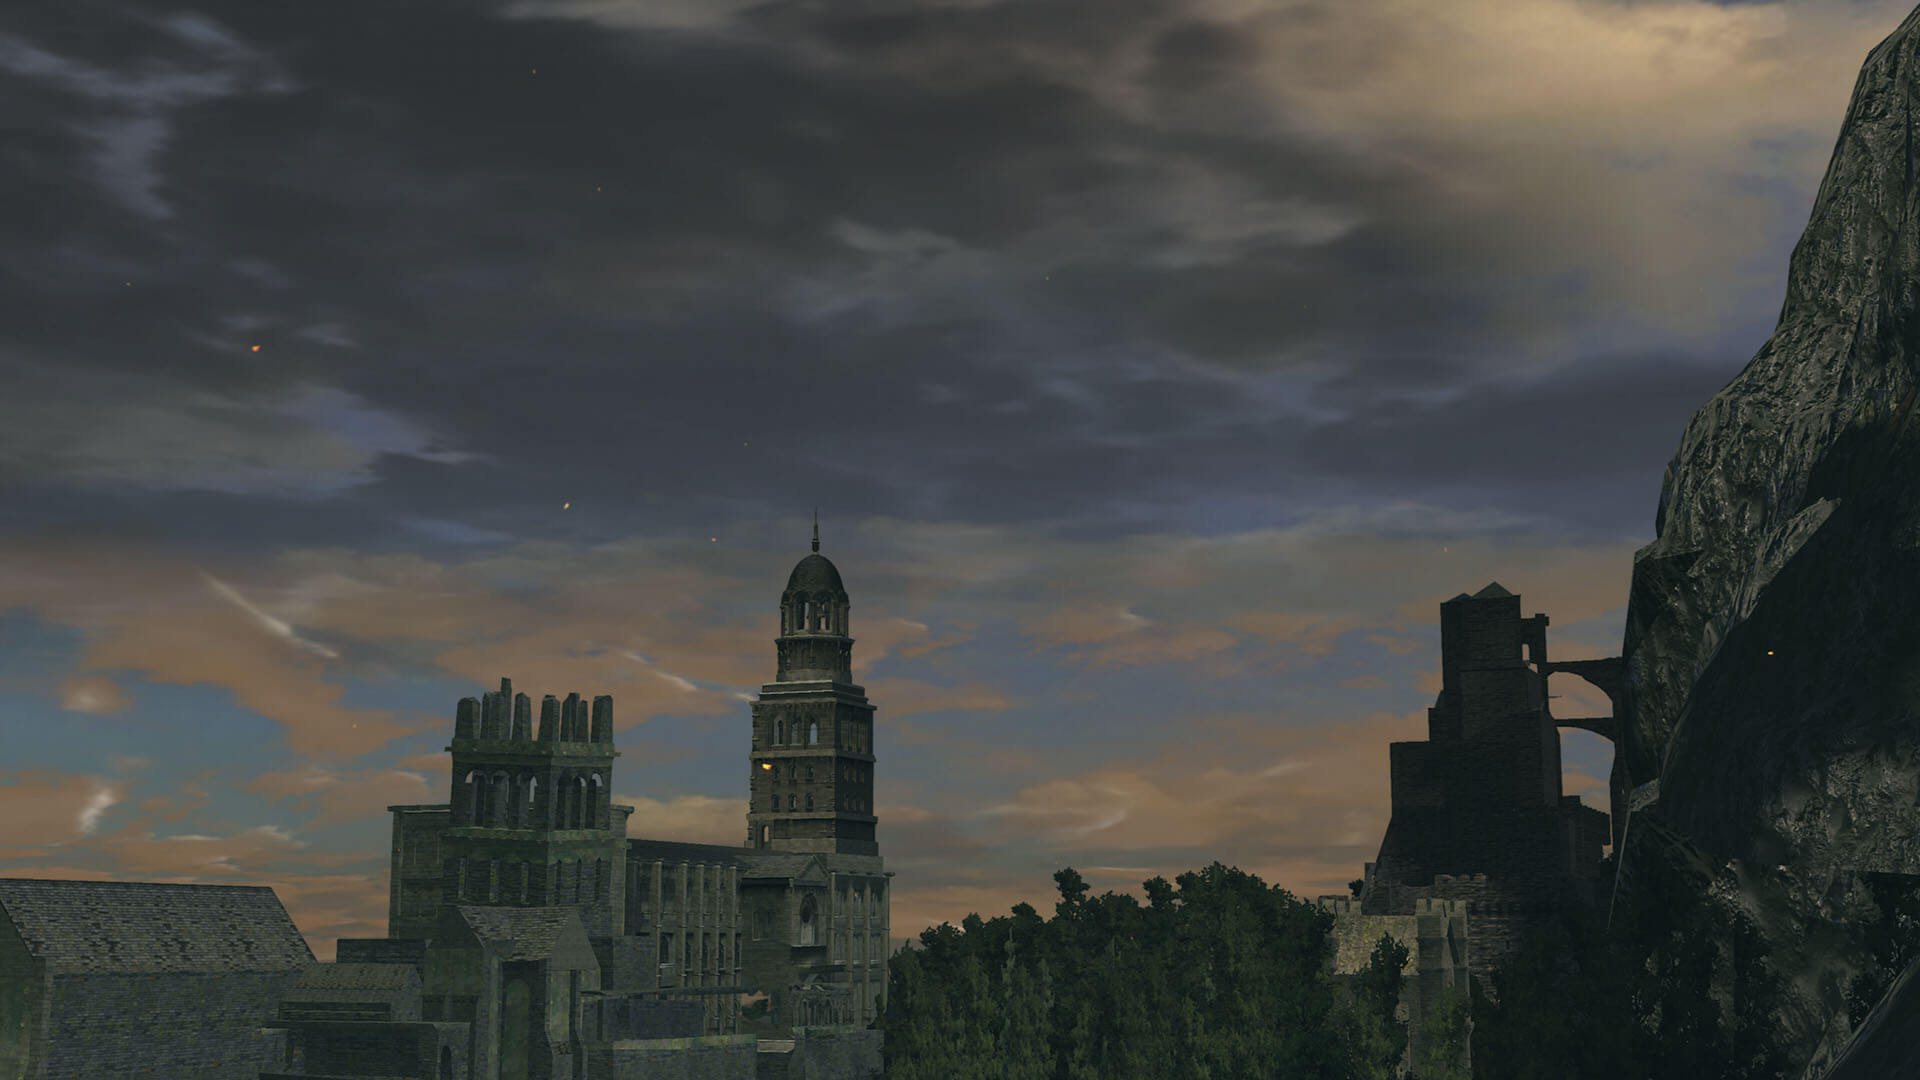 Análise  Dark Souls: Remastered vai te matar em alta resolução e 60 FPS -  Canaltech